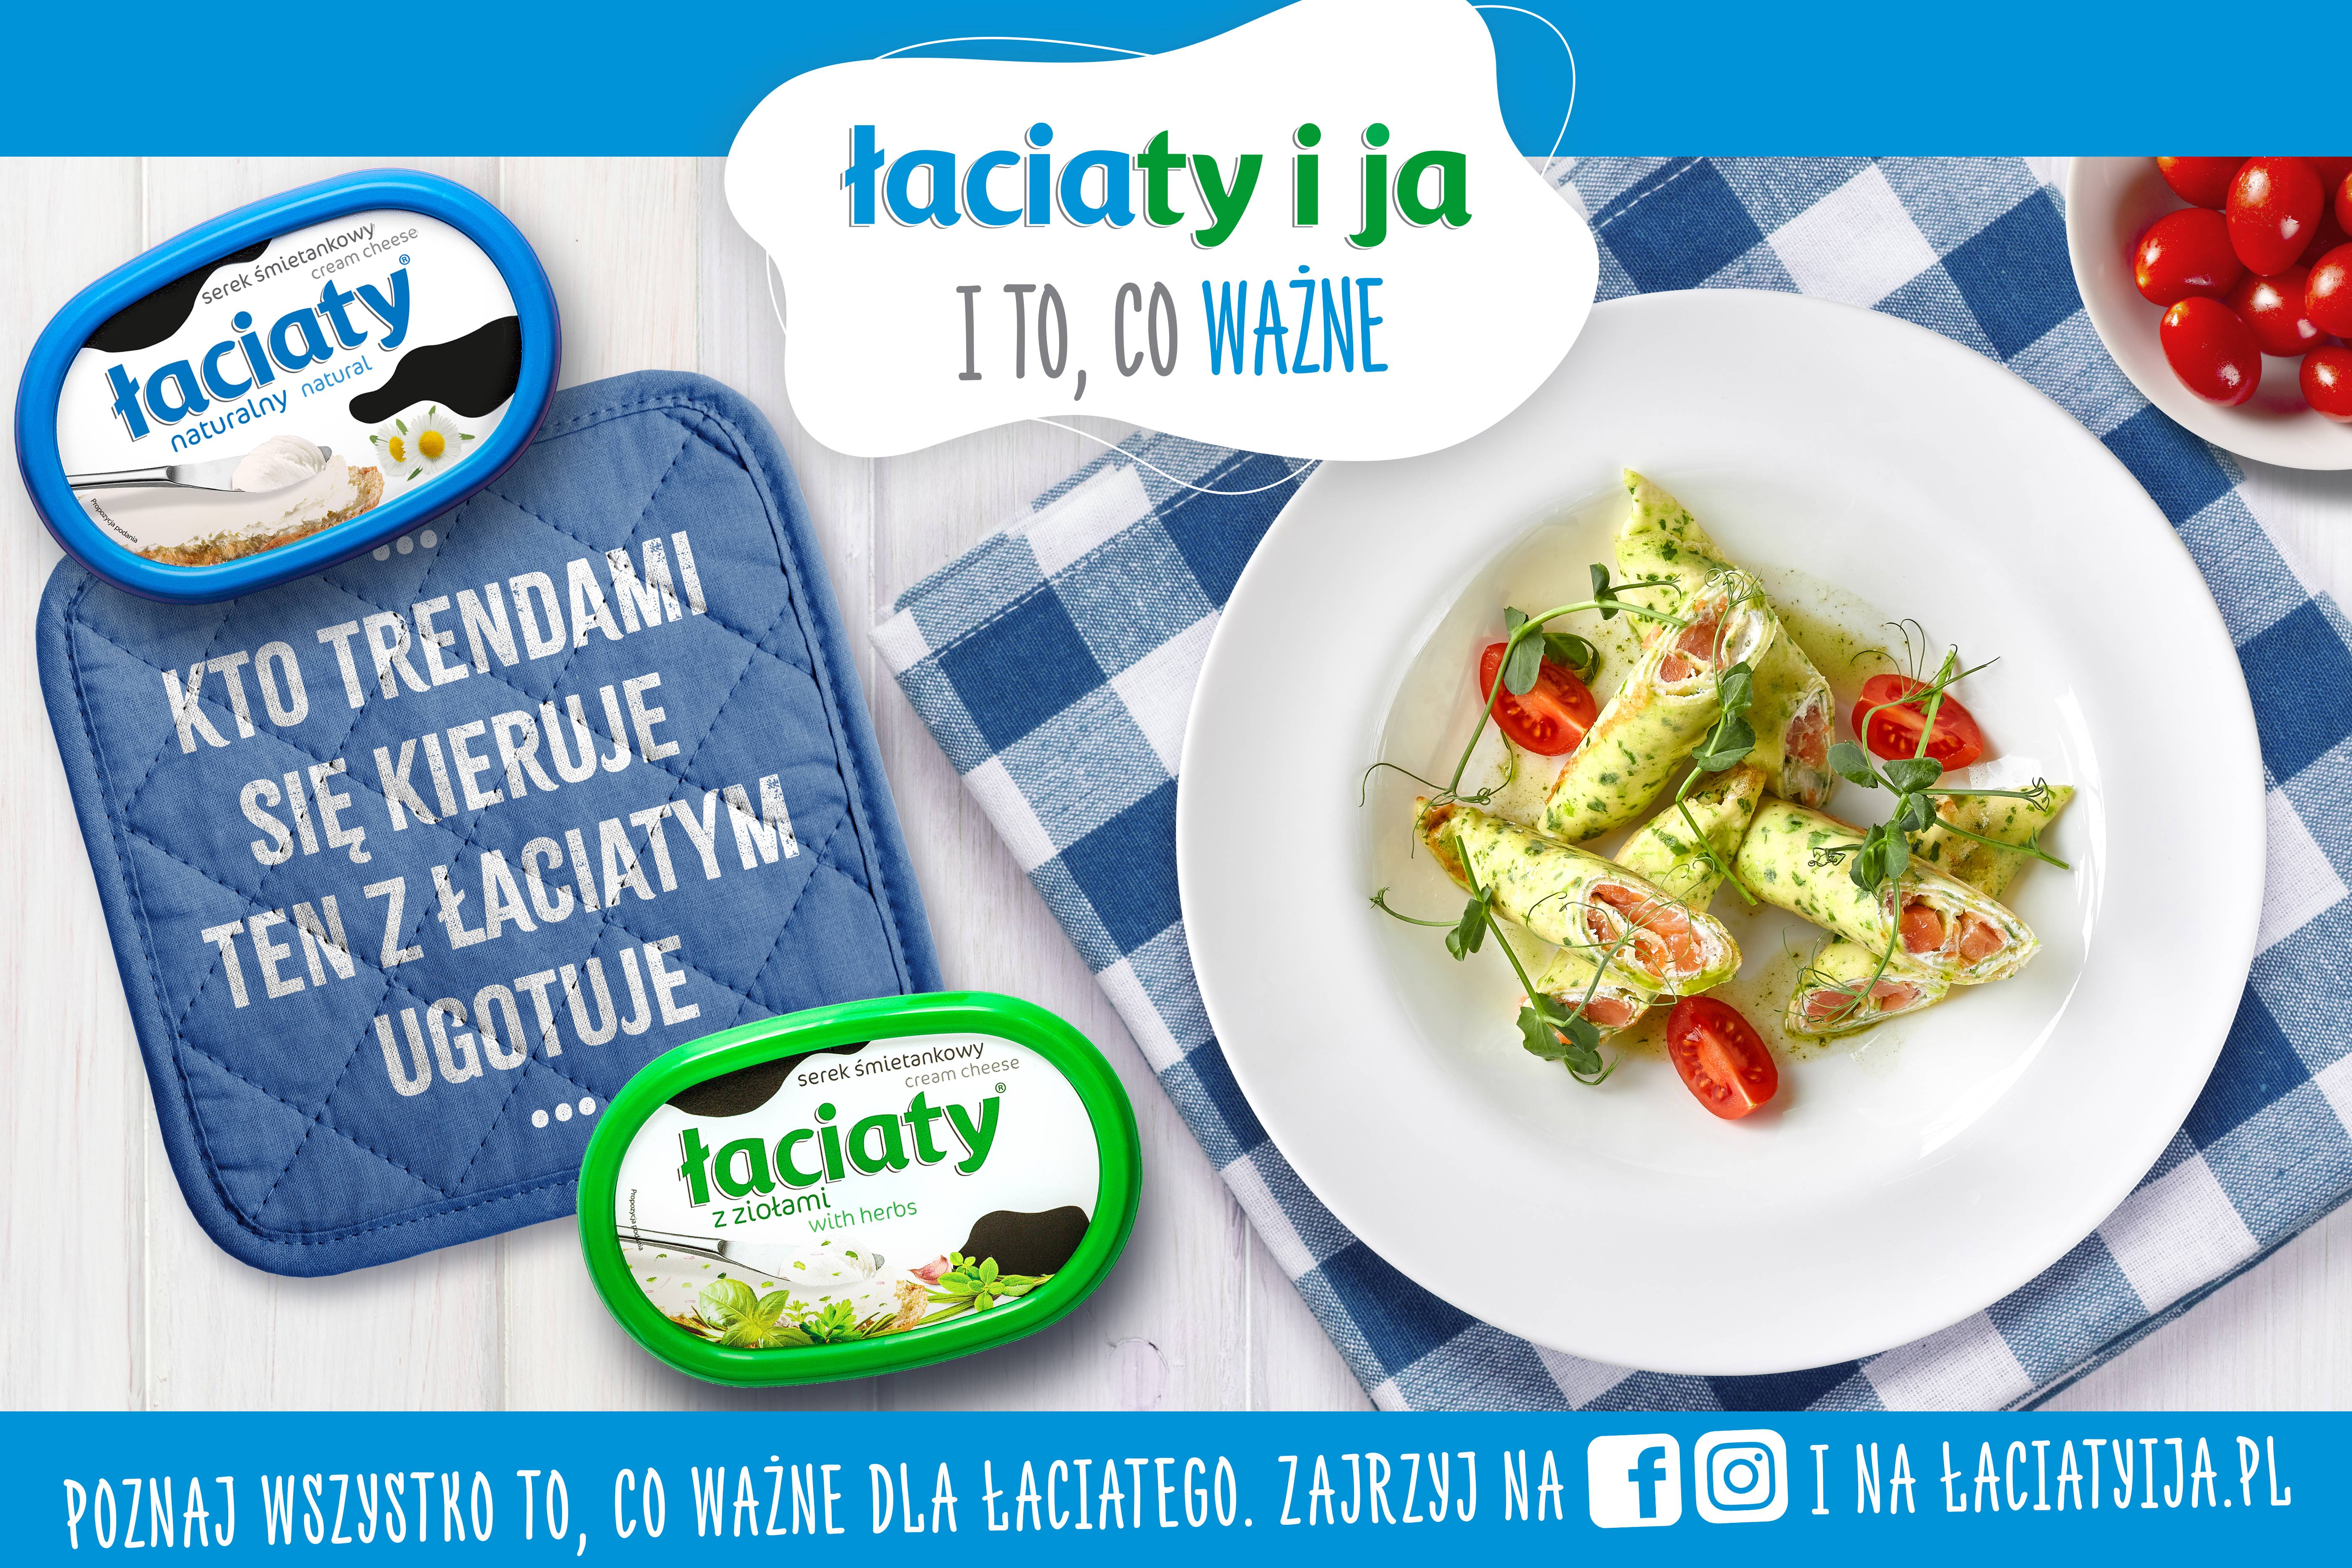 Kampania „ŁaciaTY i JA i to, co ważne” wśród liderów działań marketingowych w polskiej branży mleczarskiej